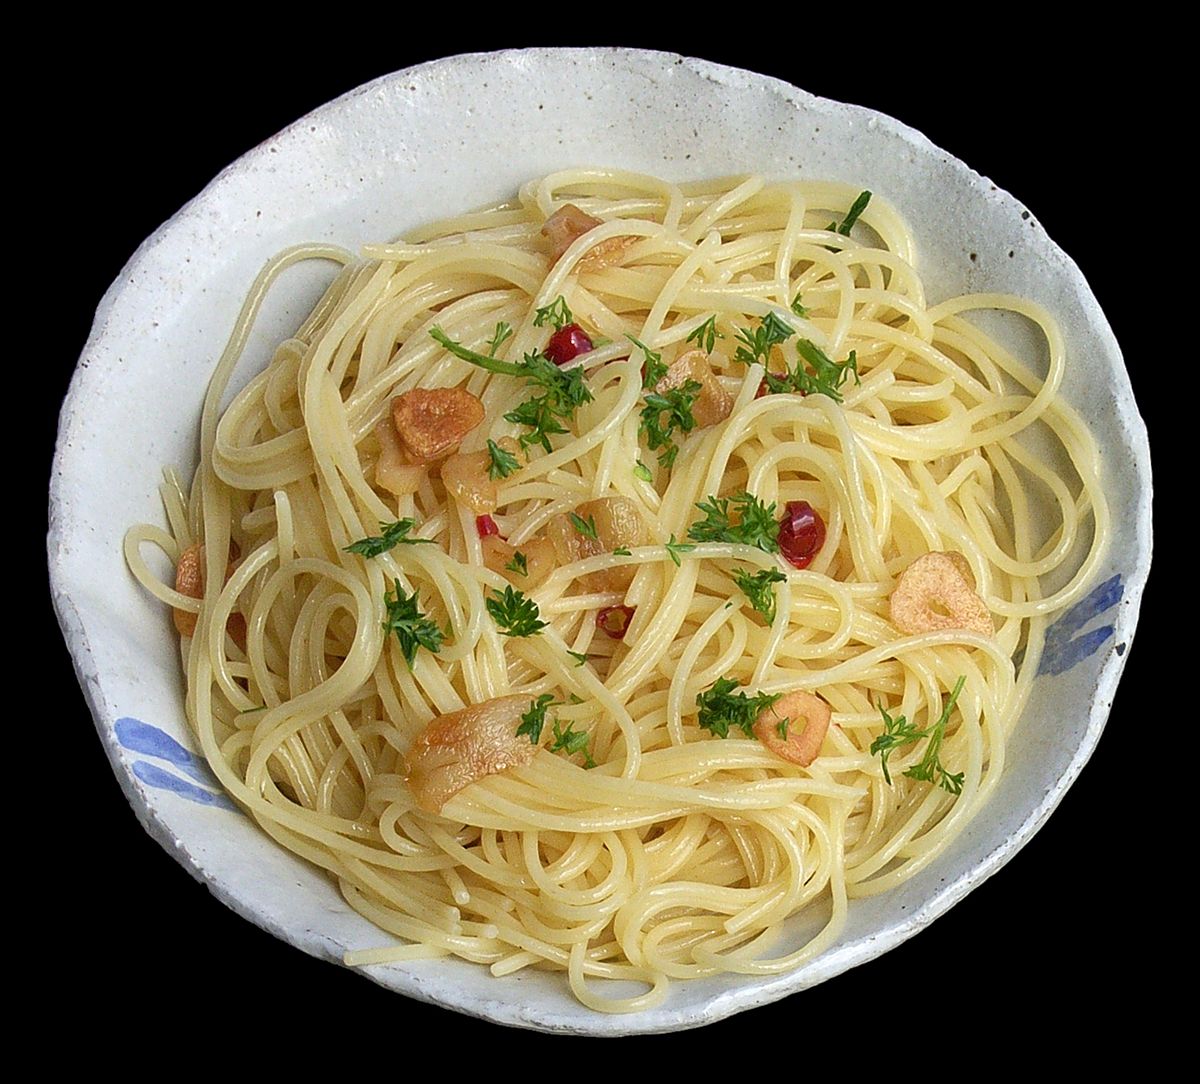  Spaghetti  aglio  e olio  Wikipedia